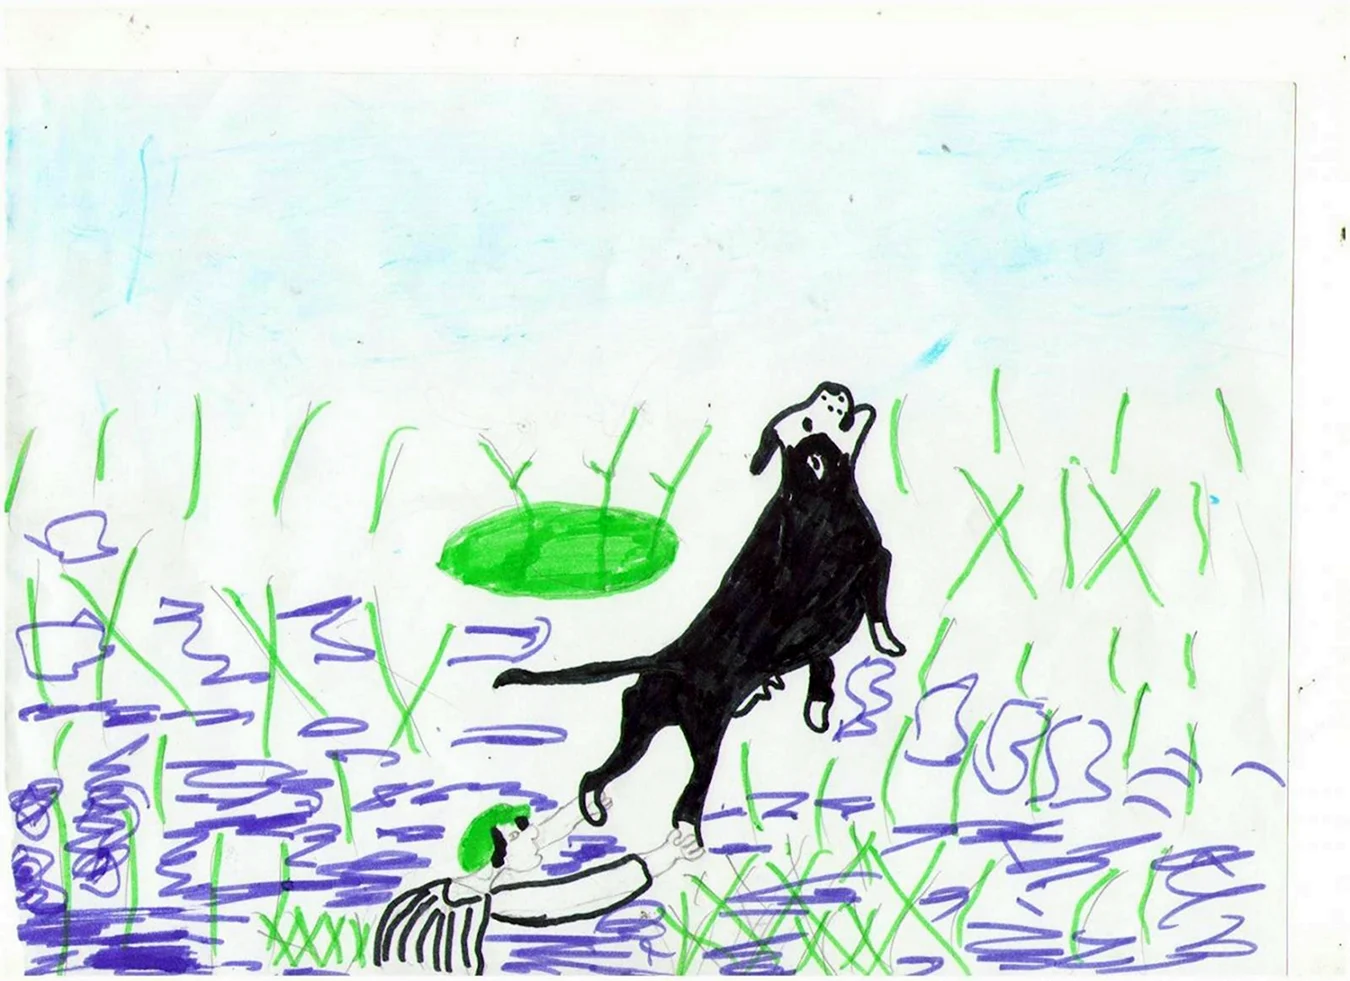 Иллюстрация к рассказу Пришвина кладовая солнца. Для срисовки